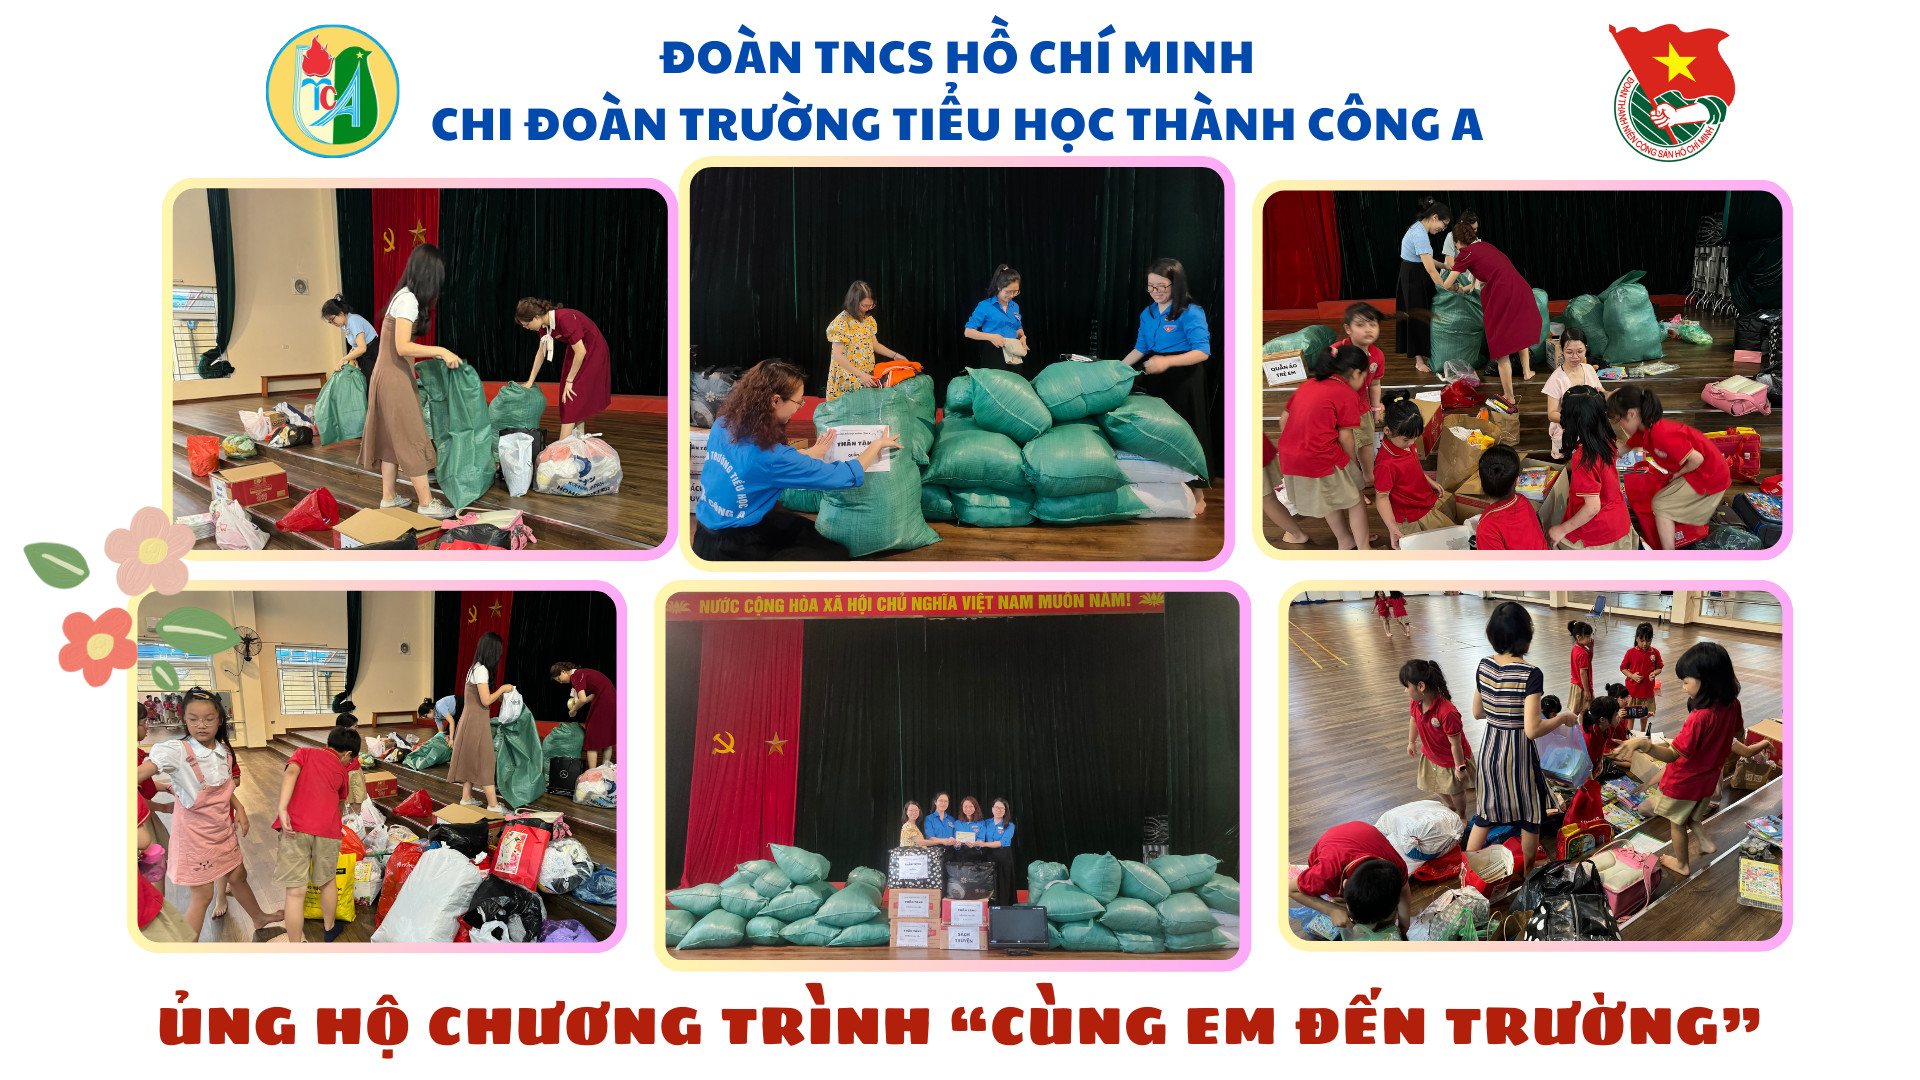 Chi đoàn trường TH Thành Công A tổng kết chương trình “Cùng em đến trường” ủng hộ học sinh trường Tiểu học Lê Văn Tám, xã Diên Bình, huyện Đắk Tô, tỉnh Kon Tum